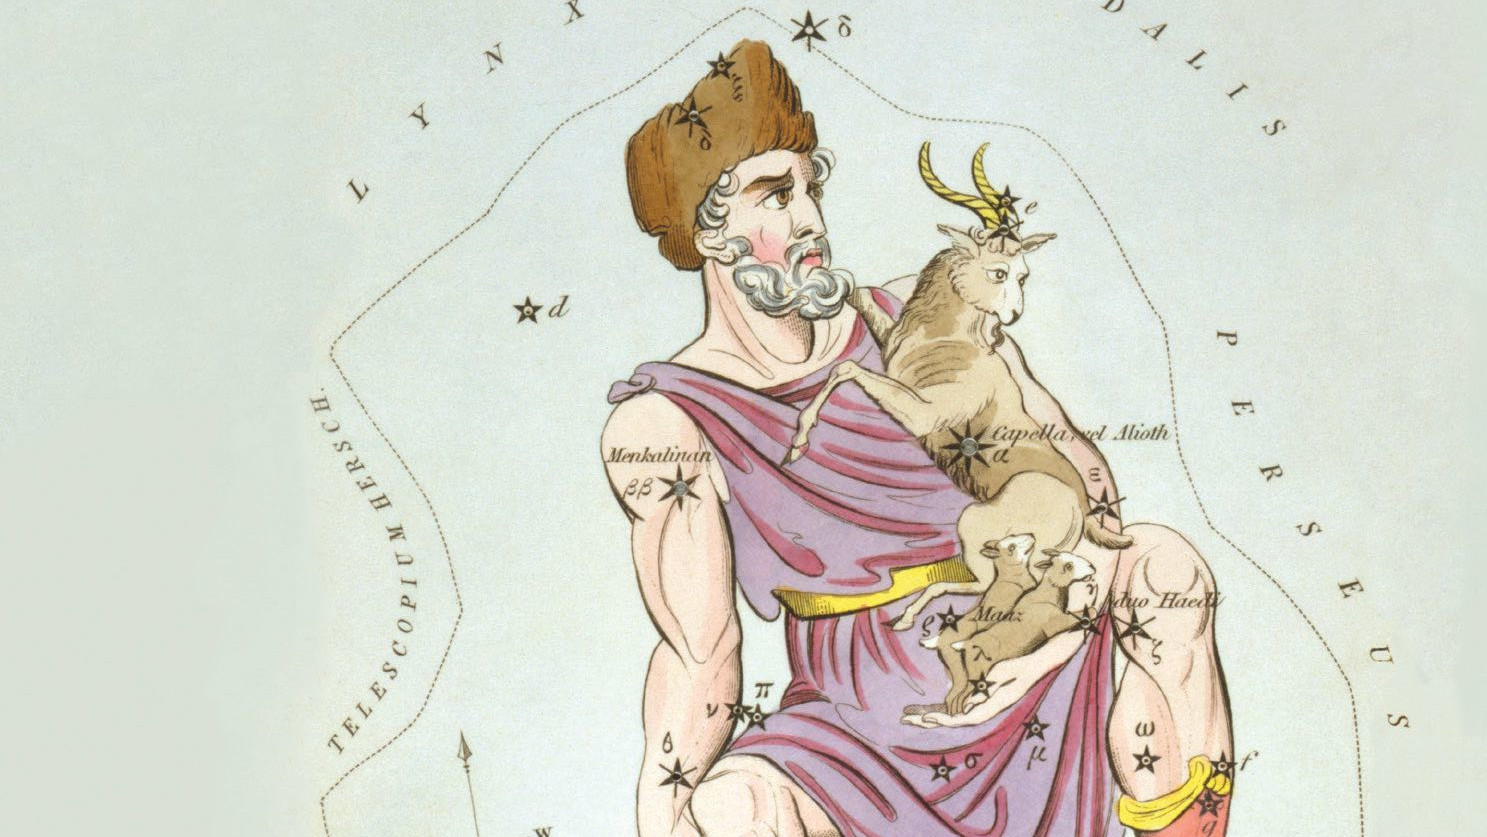 Embora o nome "Auriga" sugira um cocheiro, as representações pictóricas mostram muito mais um pastor de cabras. 
einen Ziegenhirten.